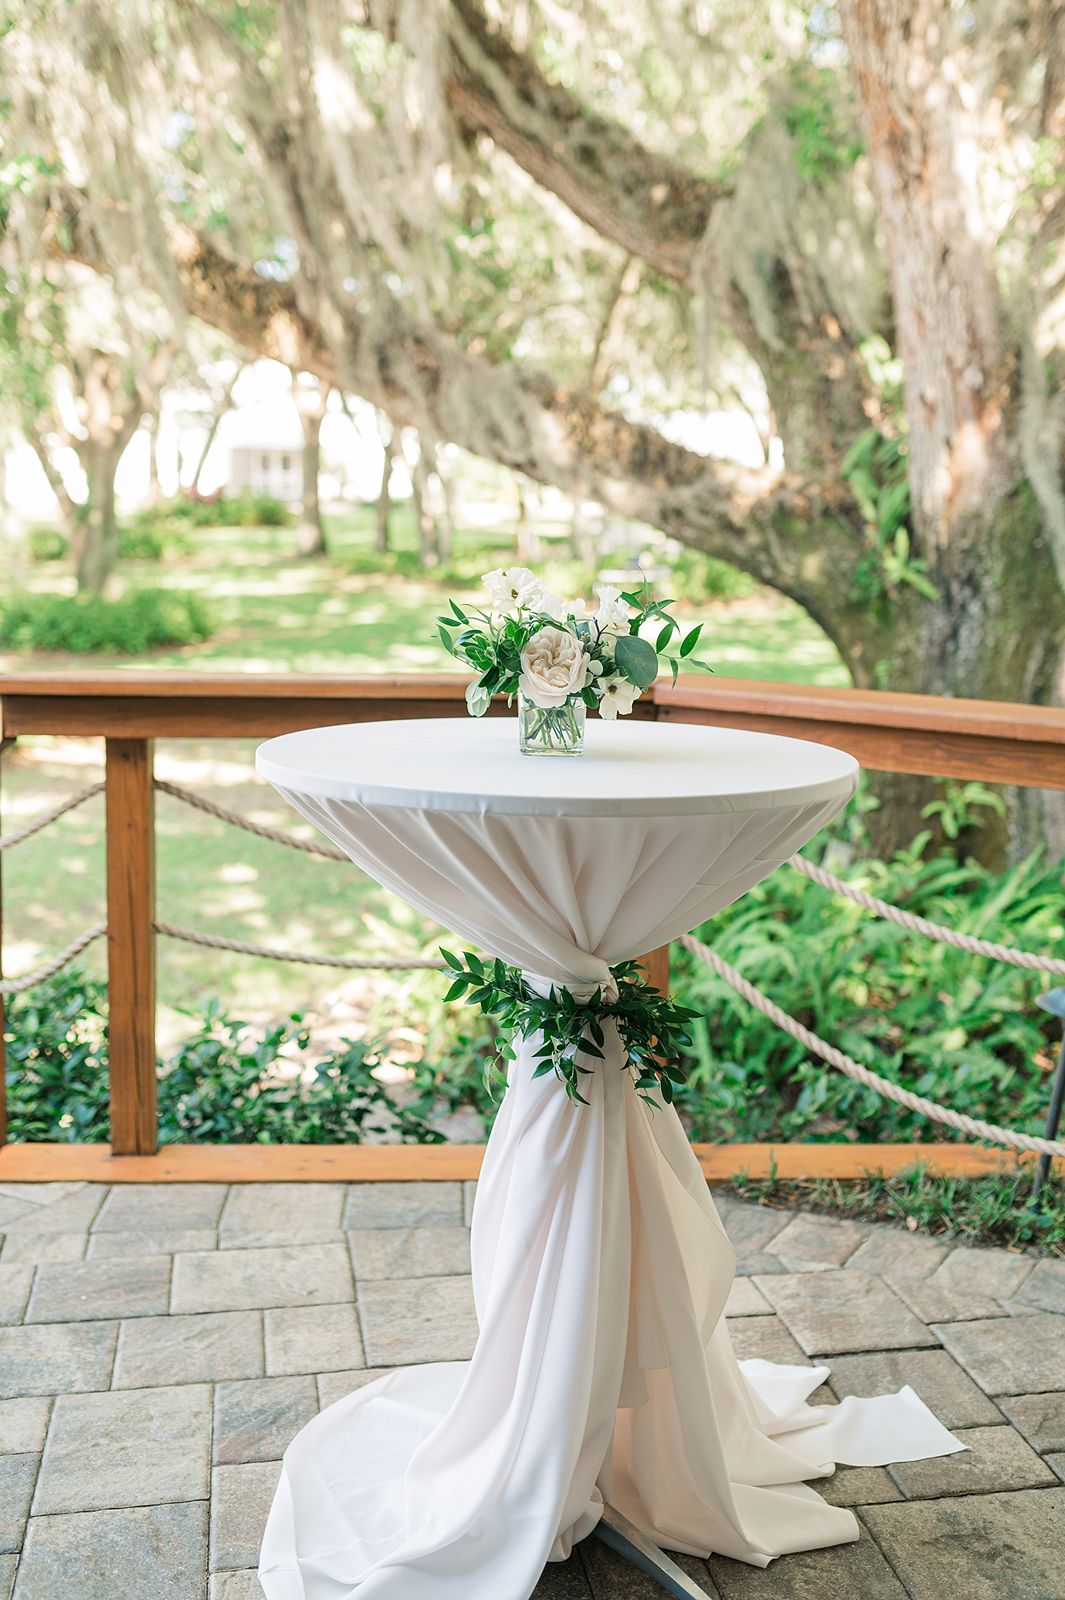 Outdoor wedding venue tablescape